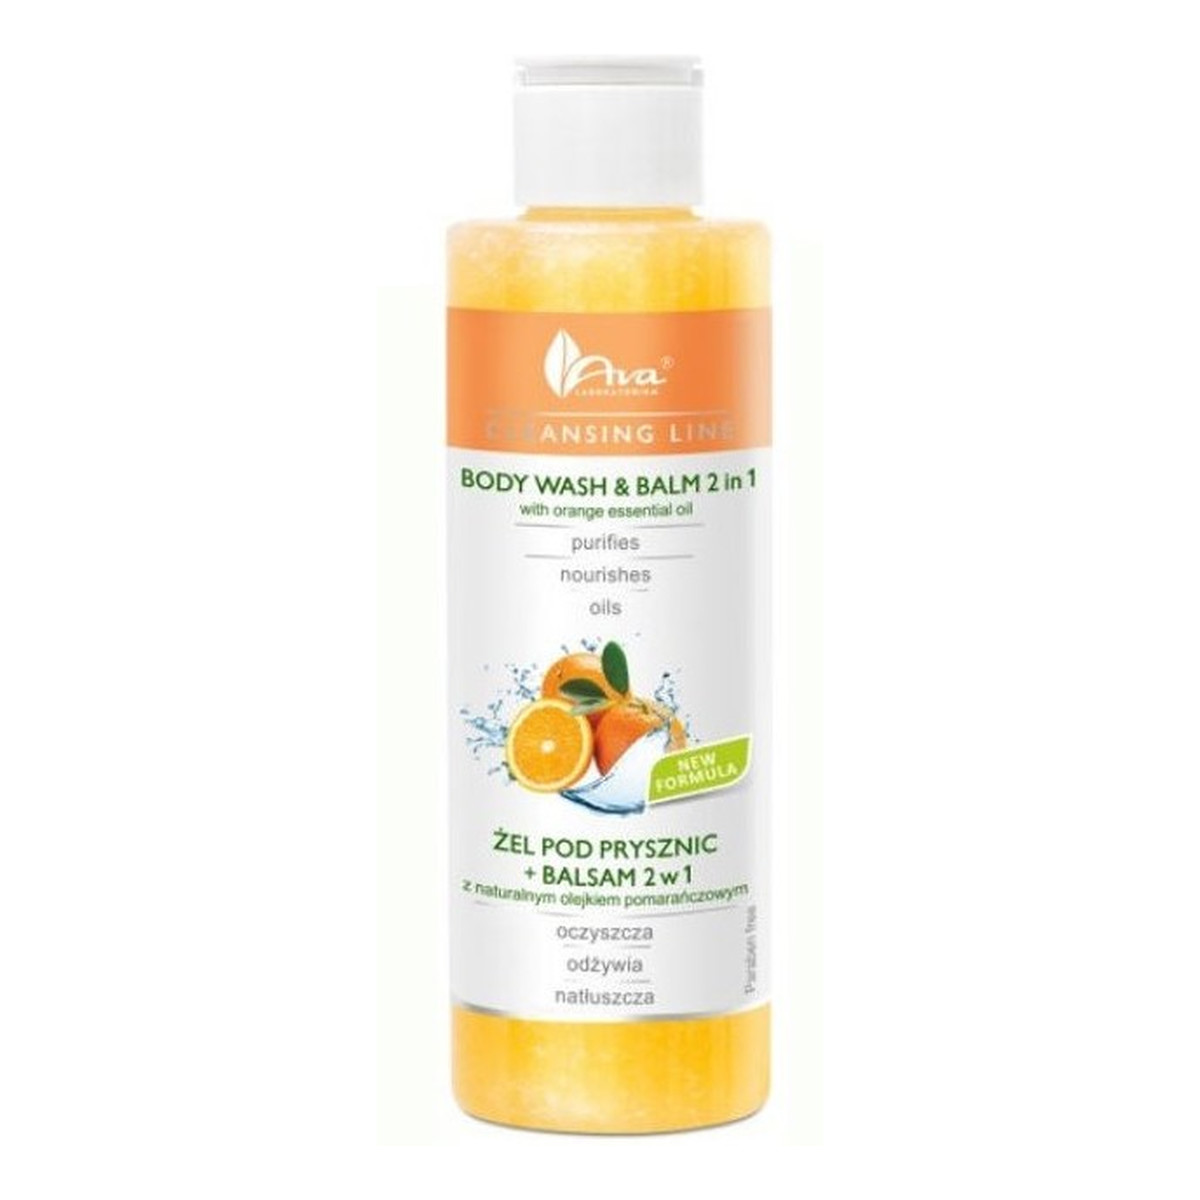 Ava Laboratorium Żel pod prysznic + balsam 2w1 z naturalnym olejkiem pomarańczowym 200ml